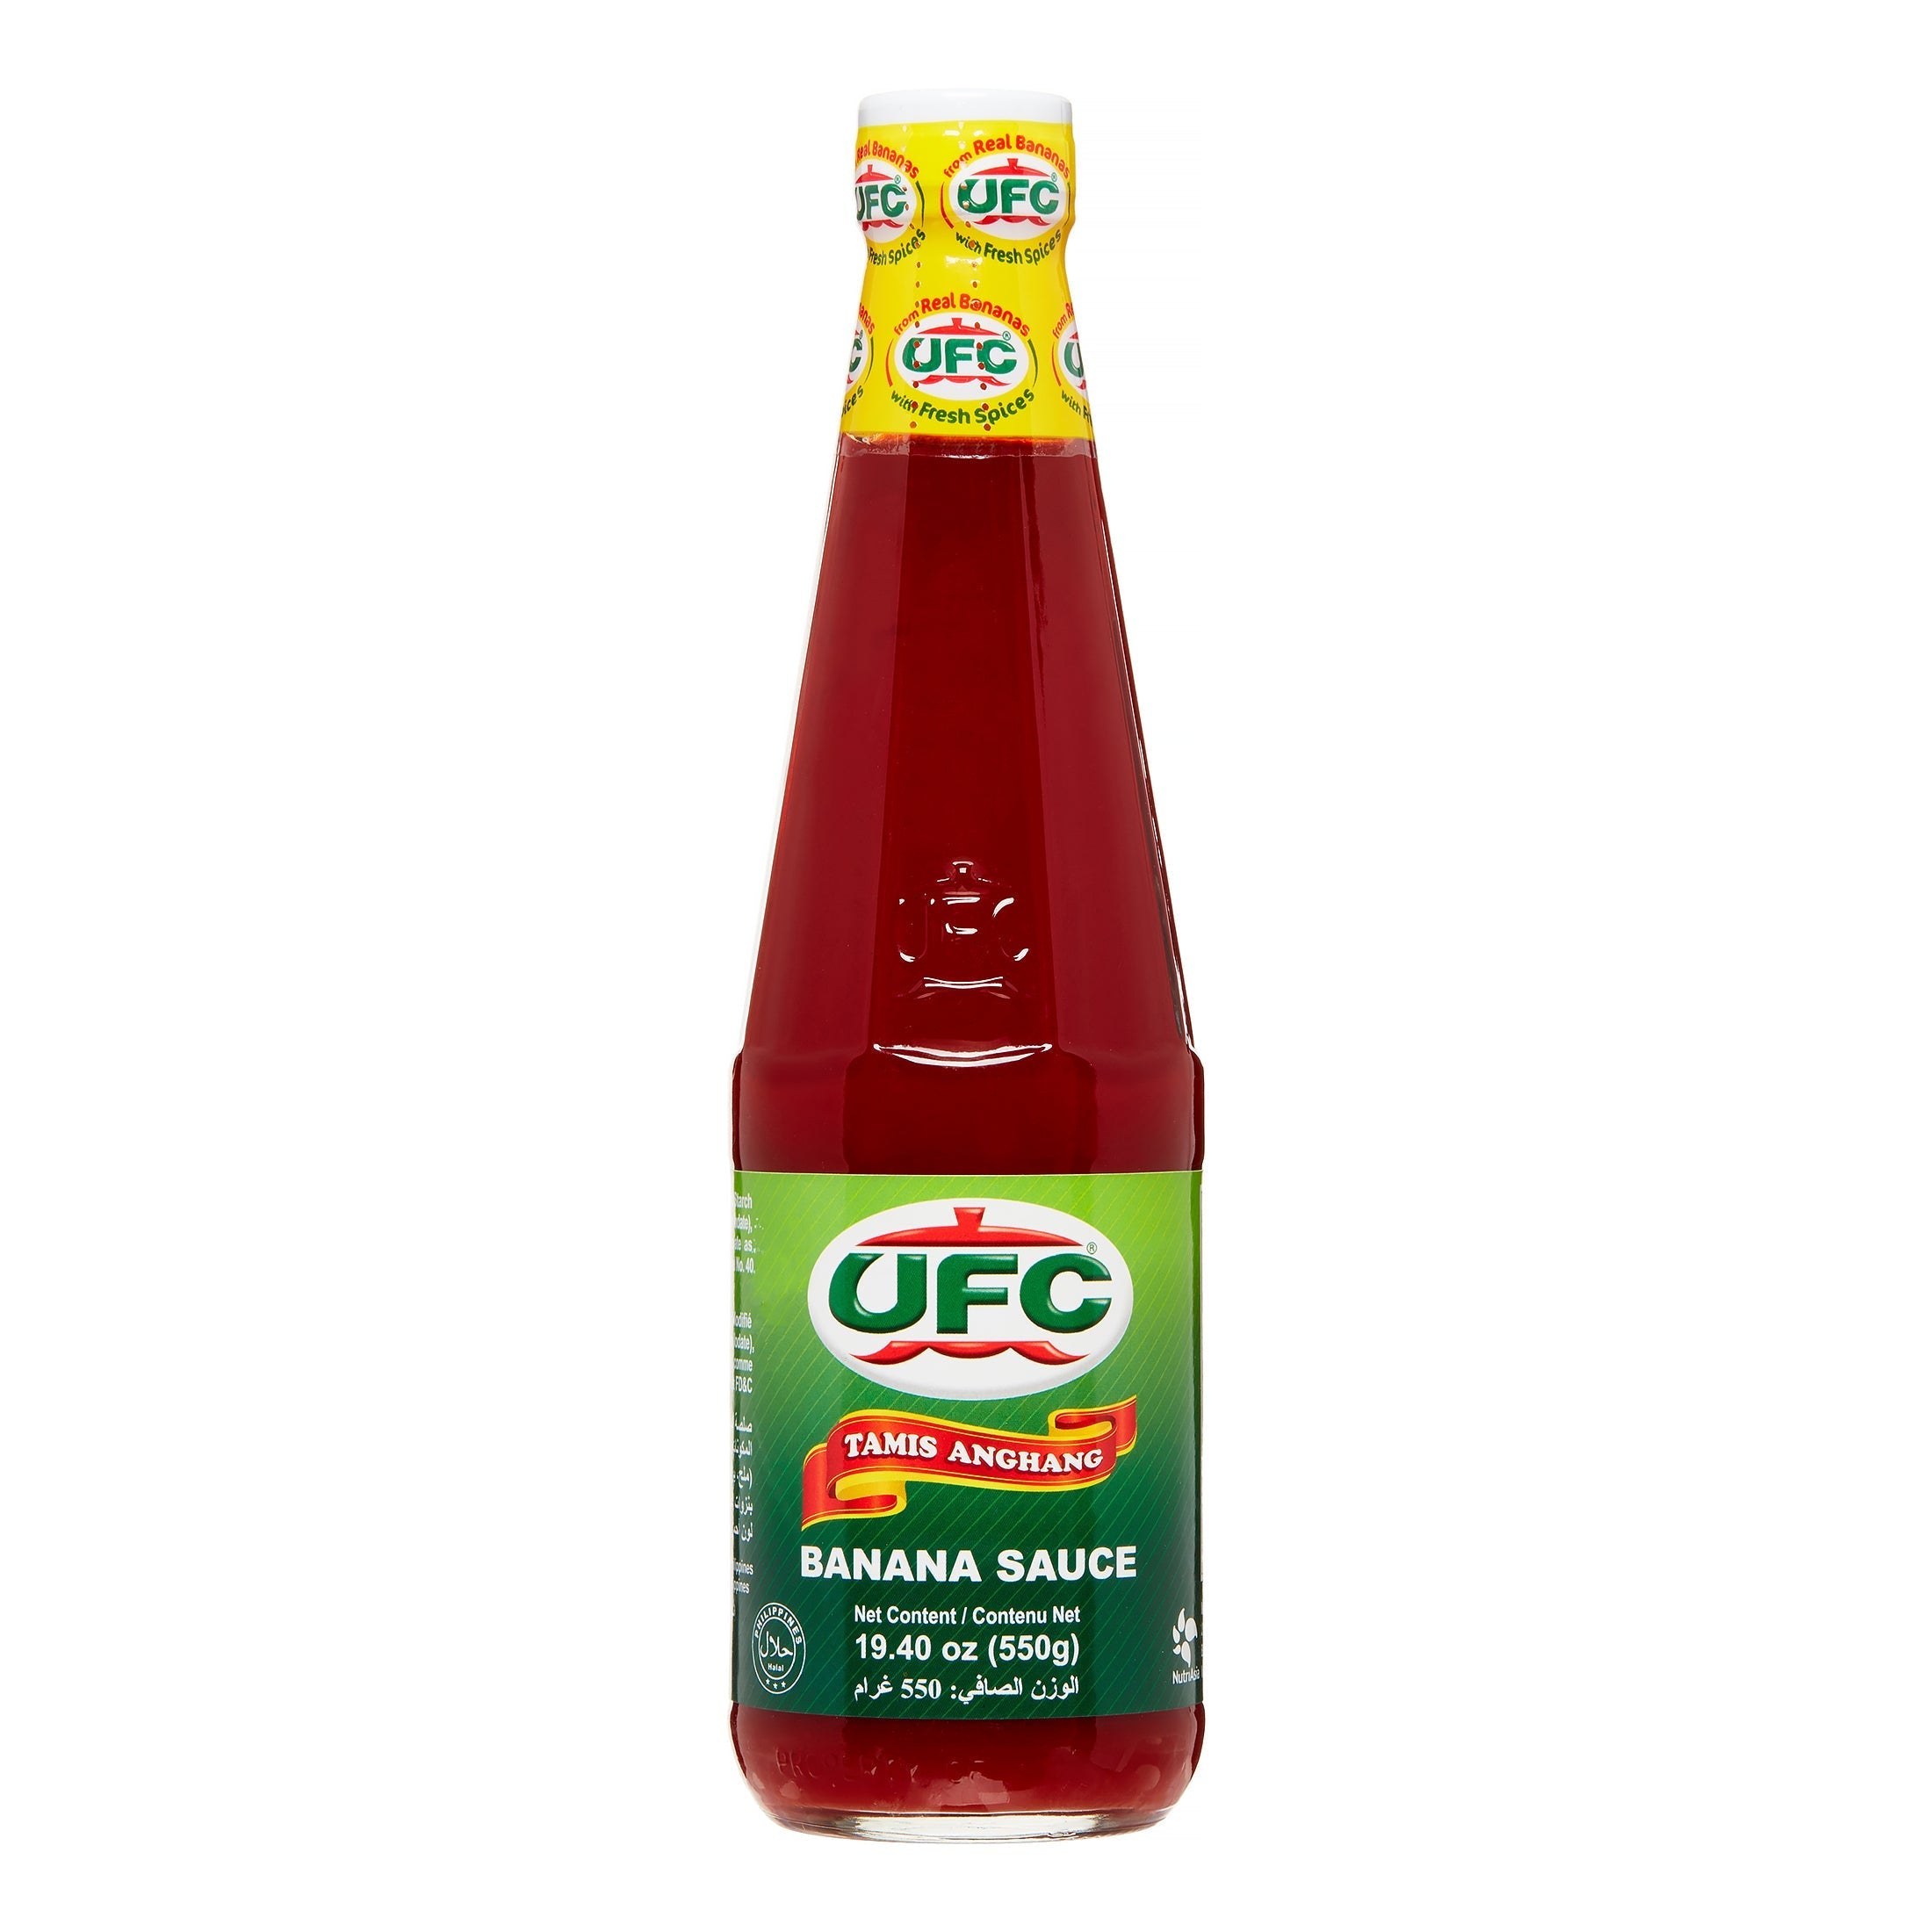 ufc-sauces-19oz-ufc-banana-sauce-ketchup-641466564652.jpg